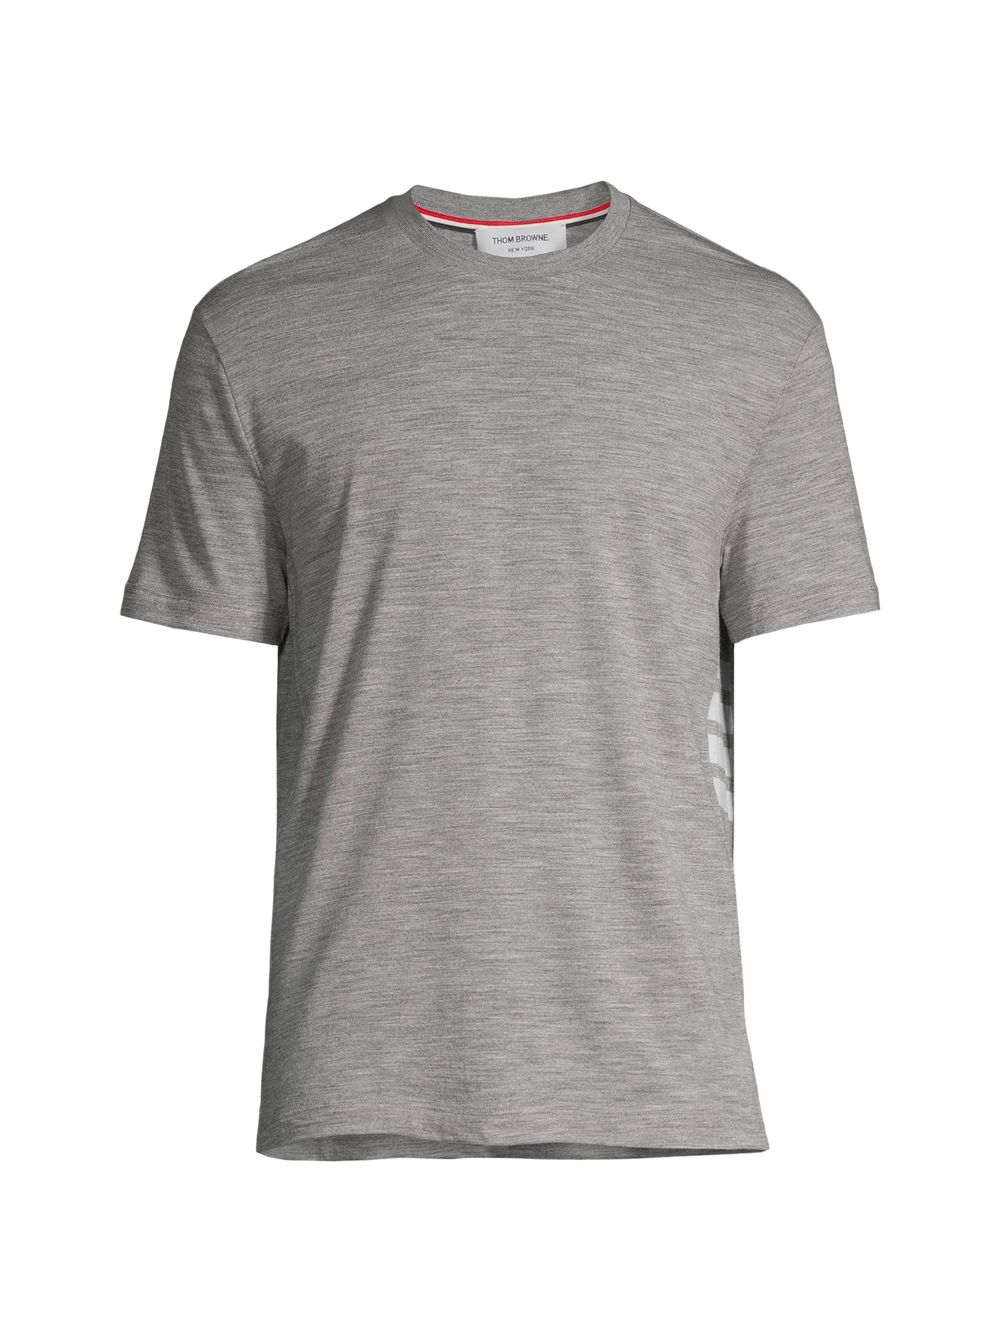 Шерстяная футболка с полосками 4 Thom Browne, серый